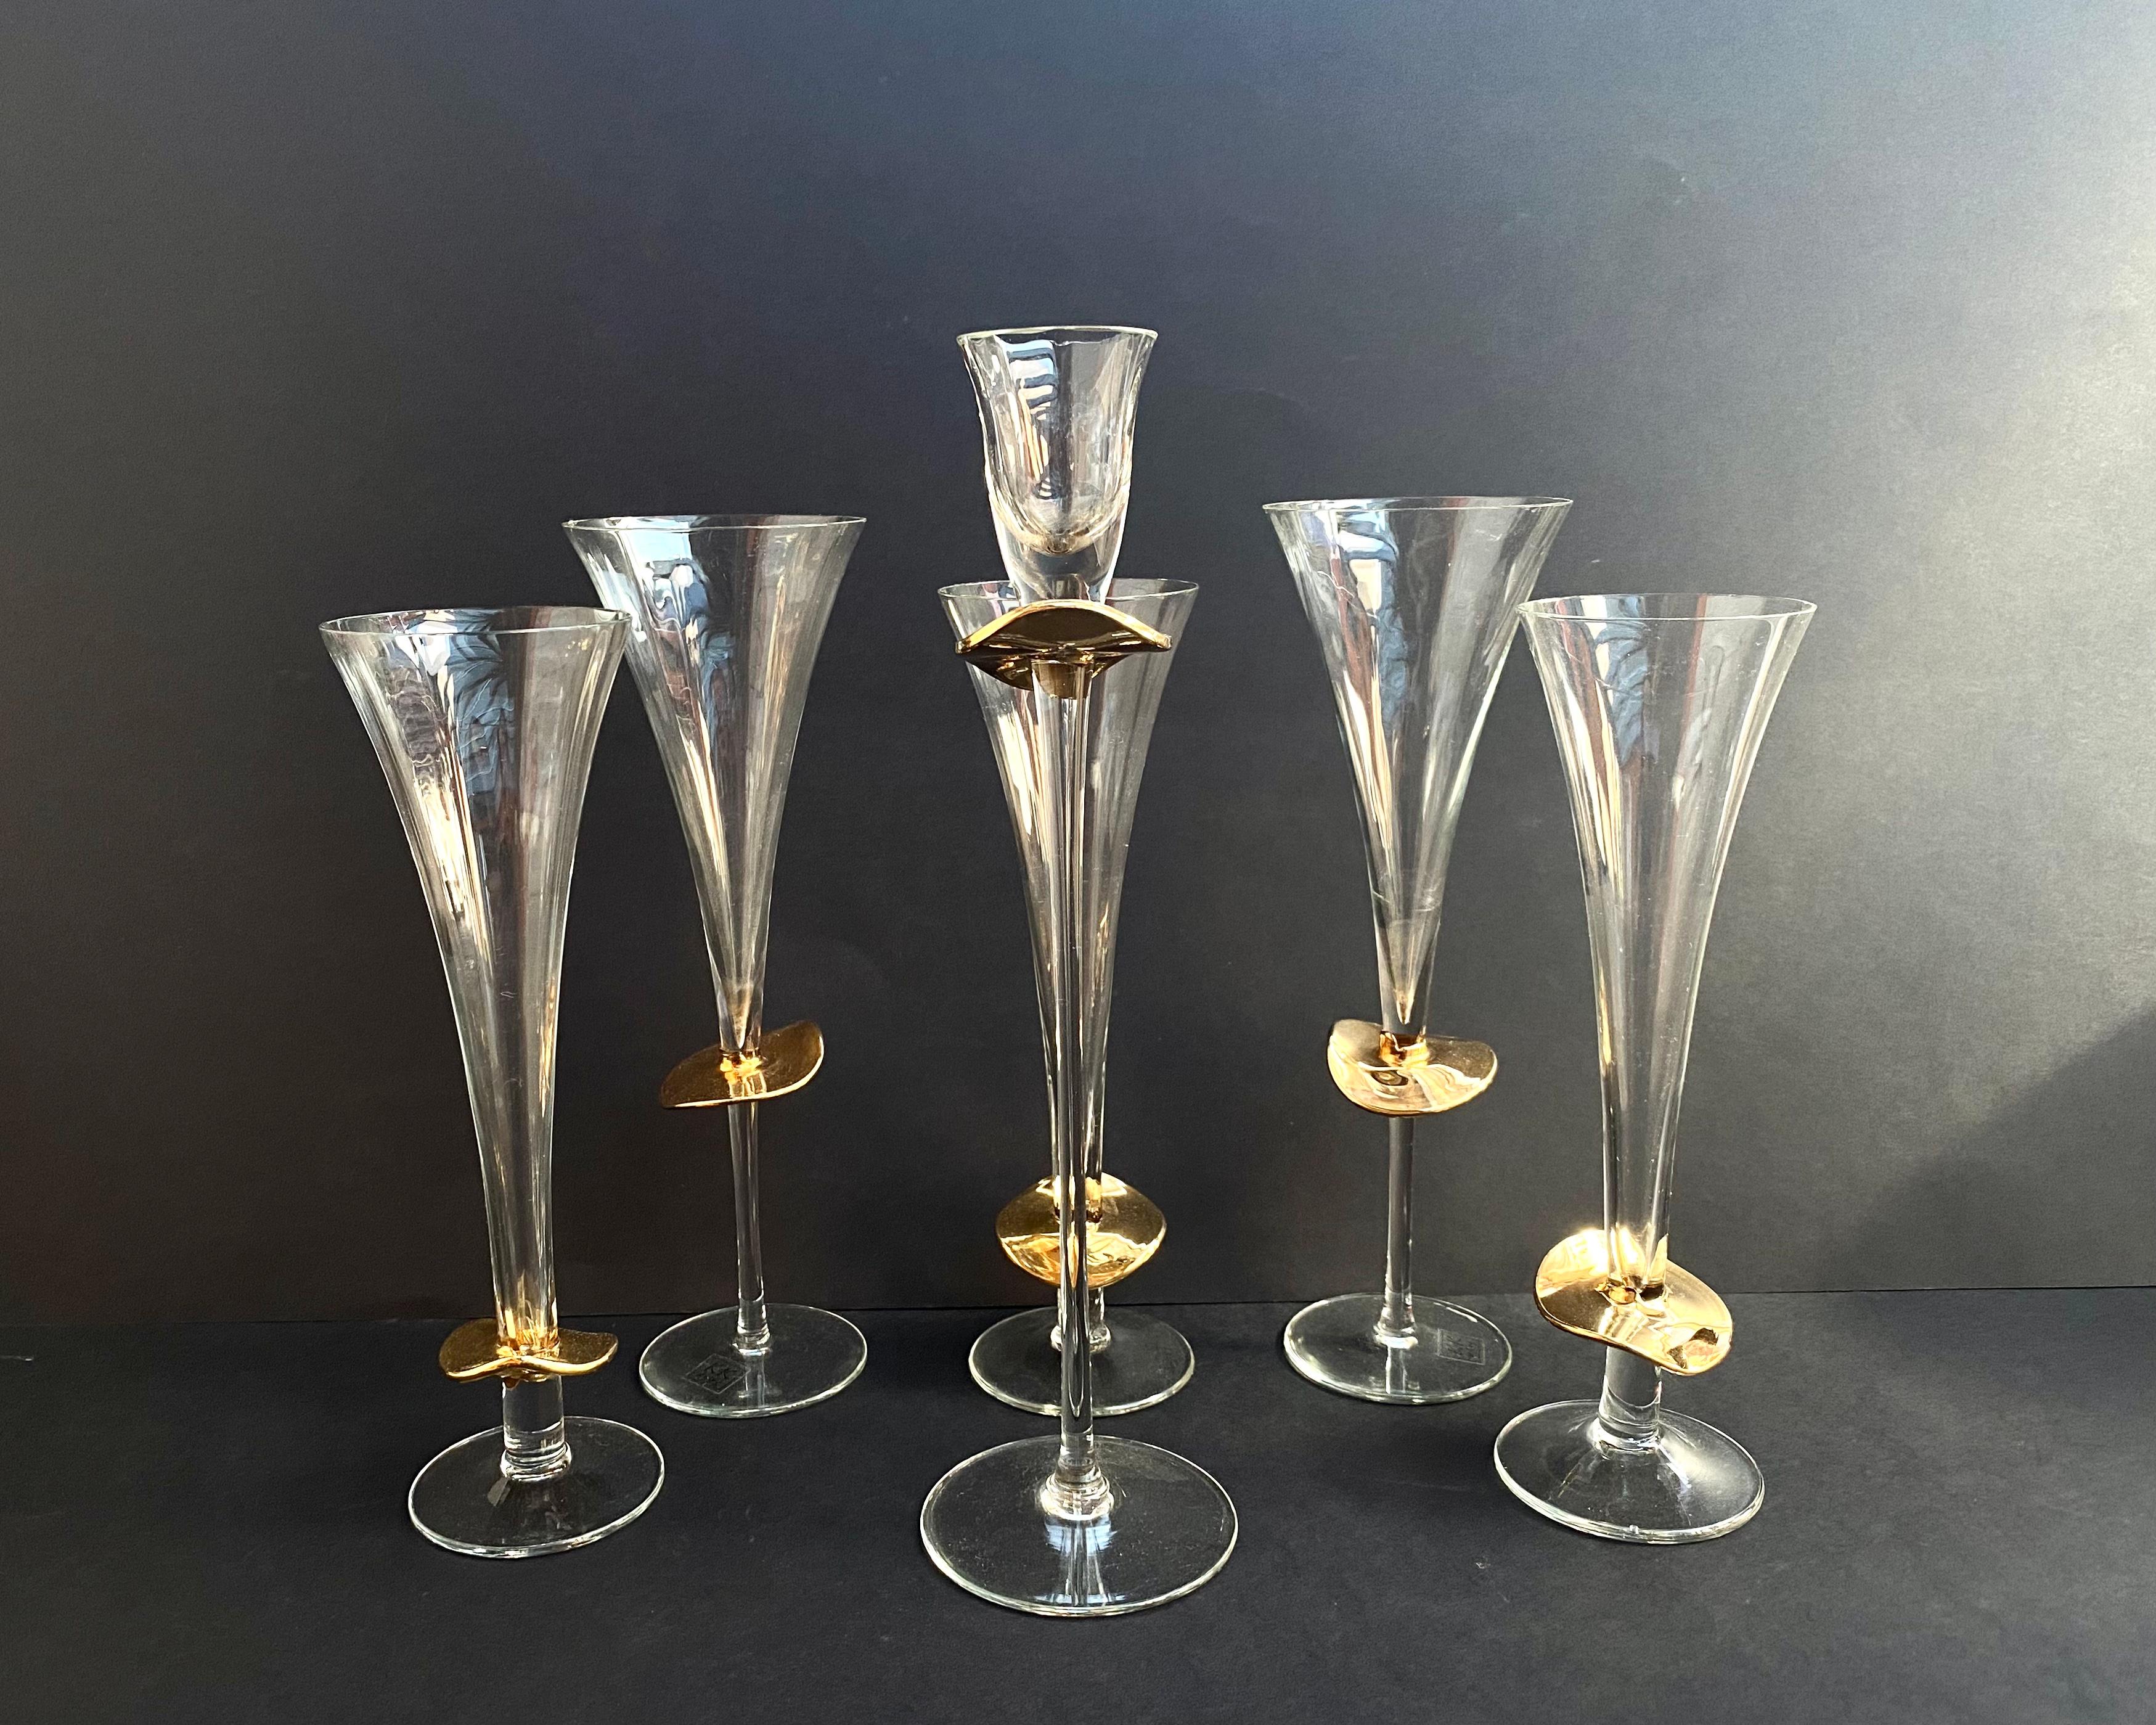 Magnifique ensemble de verres et de chandeliers en cristal avec de l'or 24k par la manufacture allemande K&K Styling.

Les produits sont équipés de pieds hauts et sont conçus pour servir du champagne, du vin, du cognac ou d'autres liquides.

Les